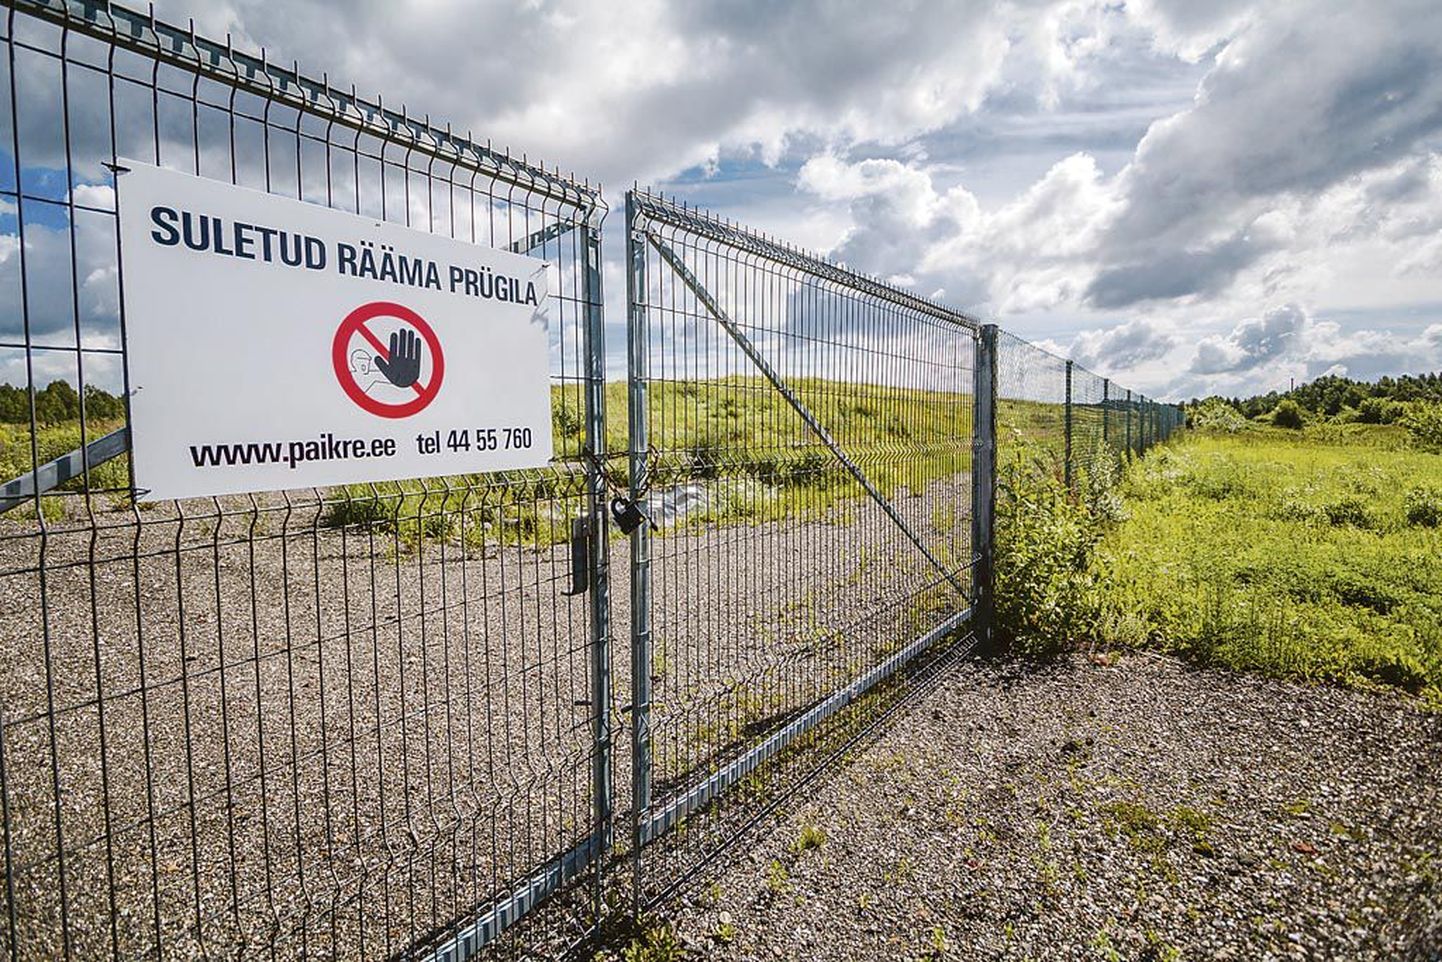 Rääma prügila suleti 2011. aastal ja sellega sai Pärnumaal lõpu ajastu, kui jäätmeid ladestati taaskasutustoiminguteta.